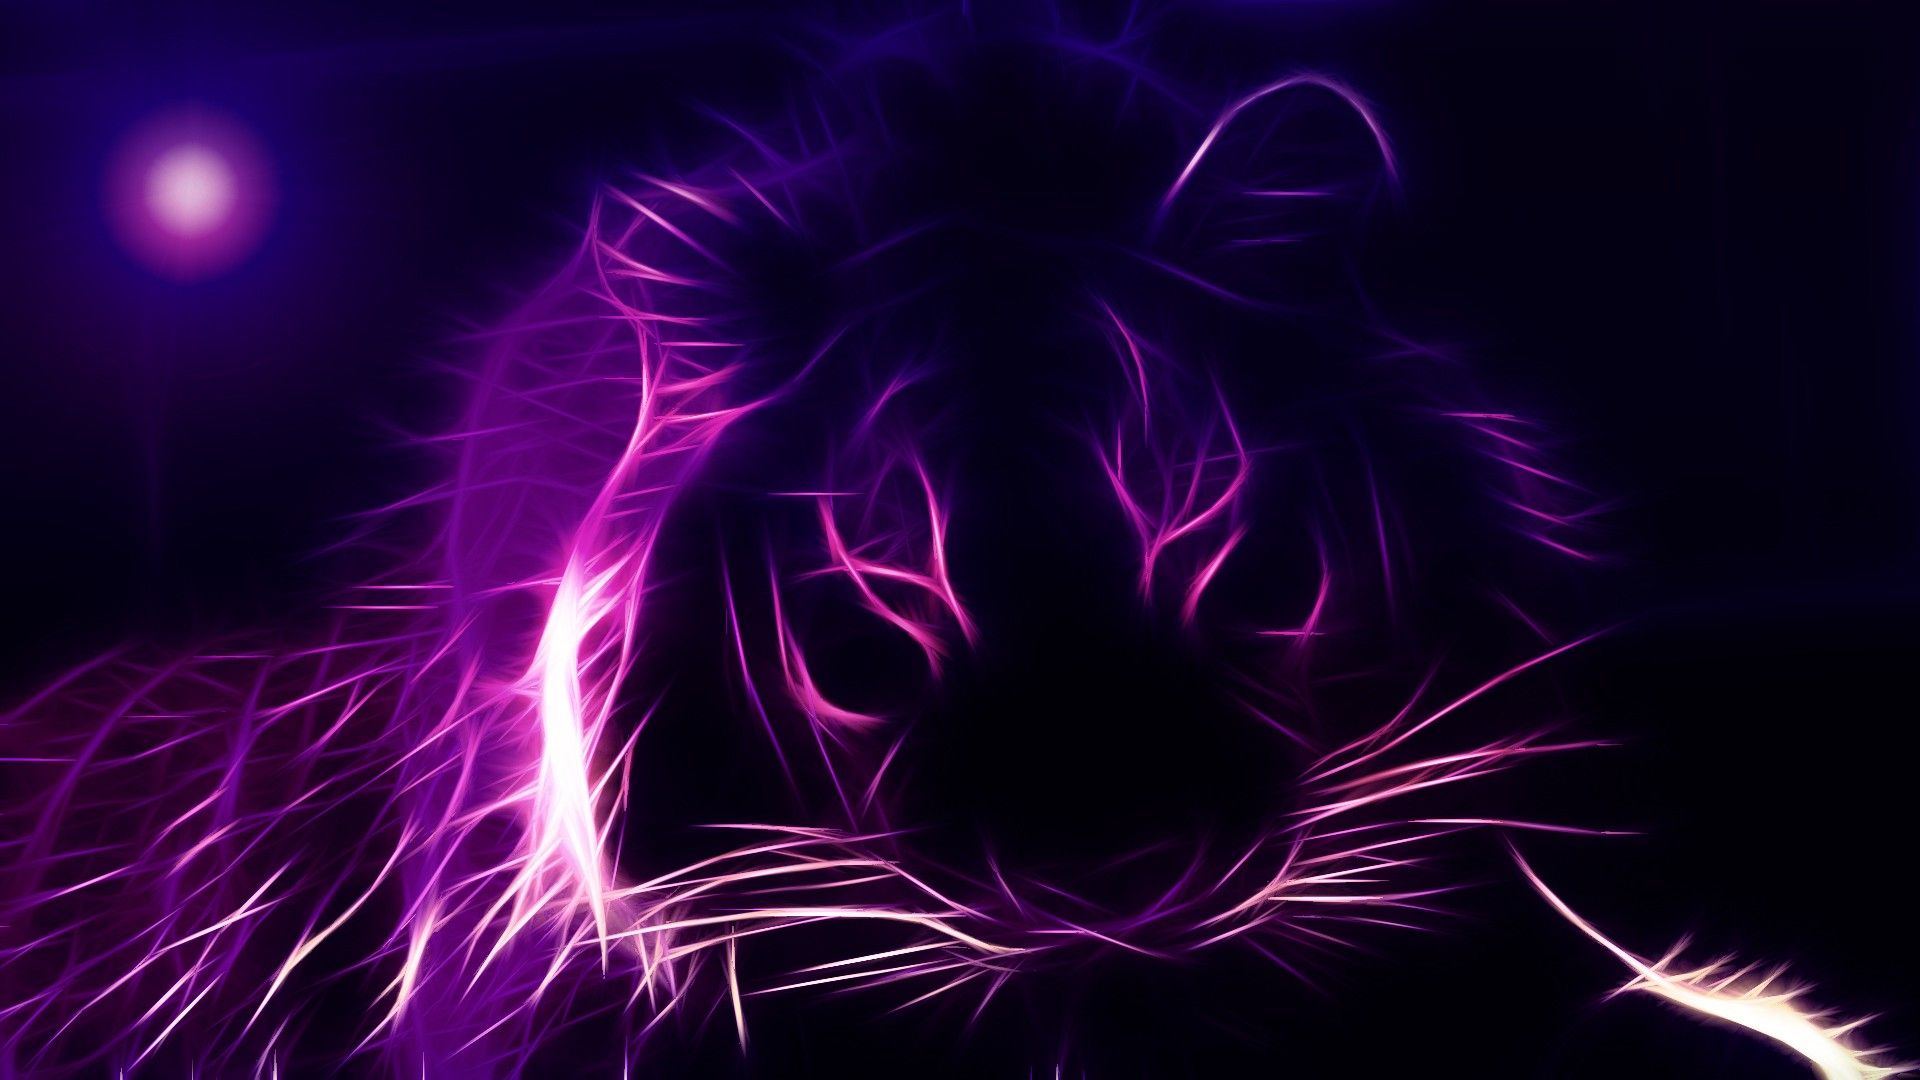 Purple Tiger Fondos de pantalla HD | 1920x1080 | ID: 24842 - WallpaperVortex.com